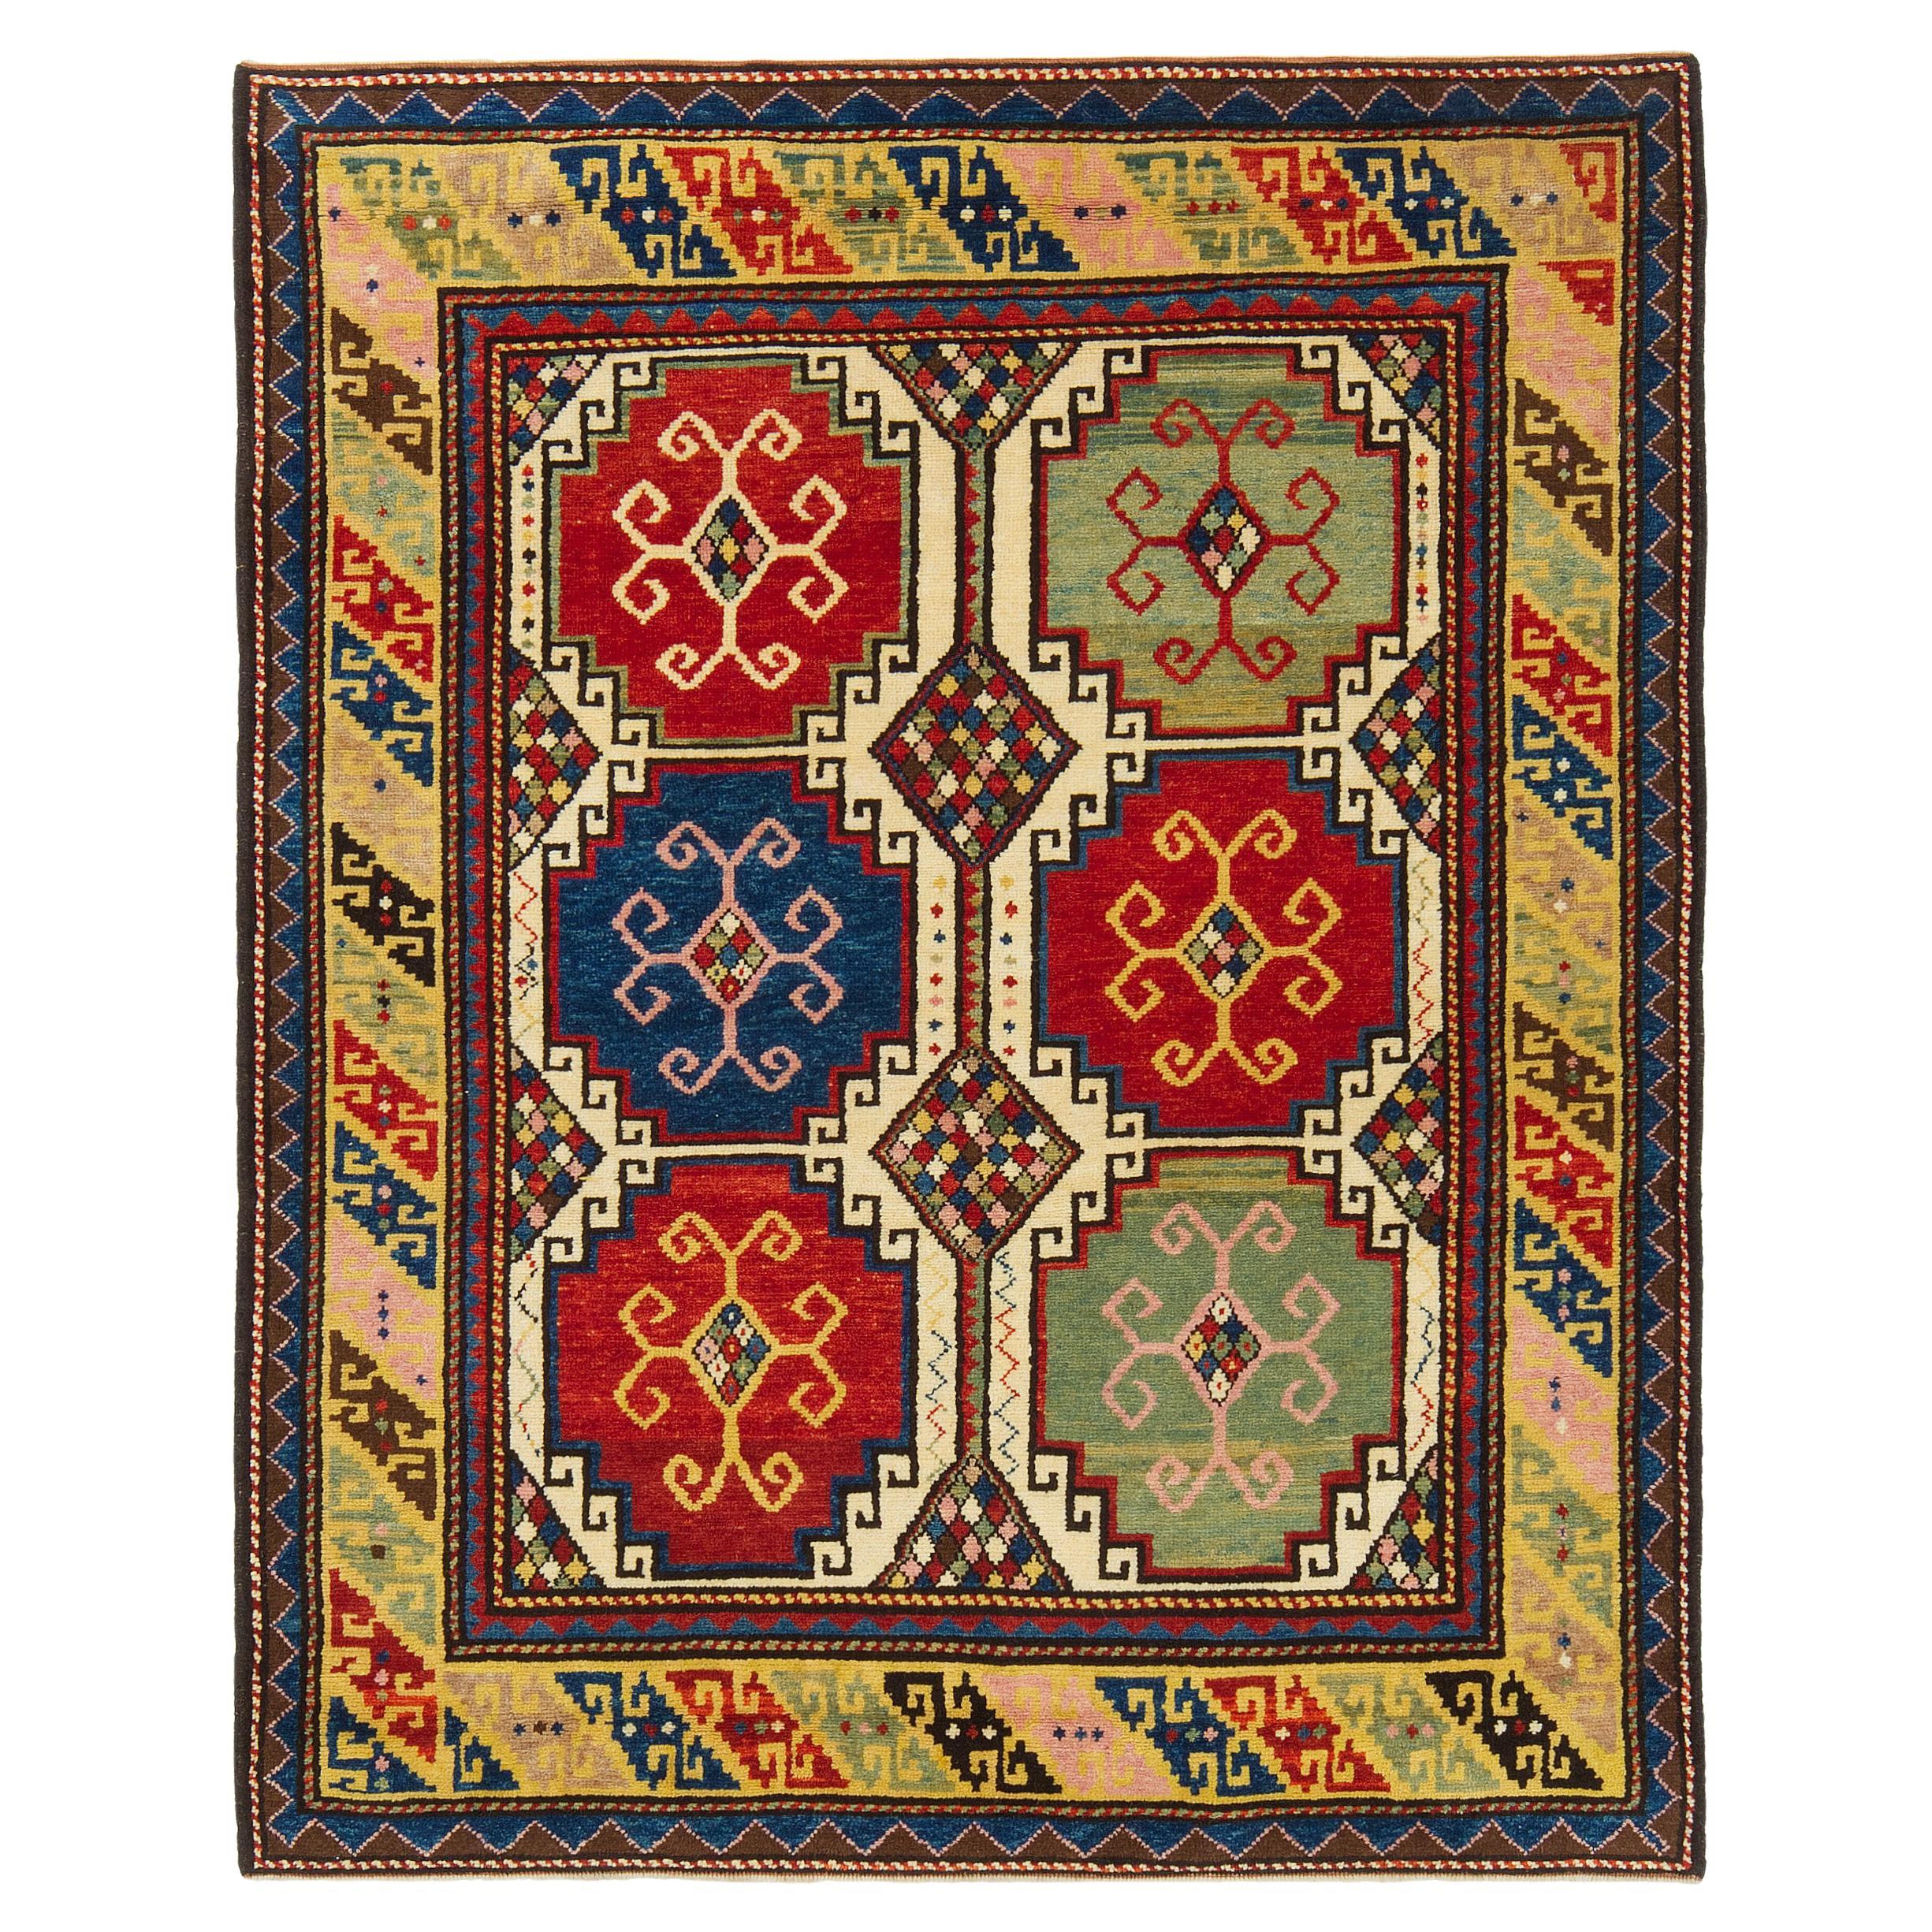 Ararat Rugs Memling Gul Kazak Rug, 19th C Caucasian Revival Carpet Natural Dyed For Sale